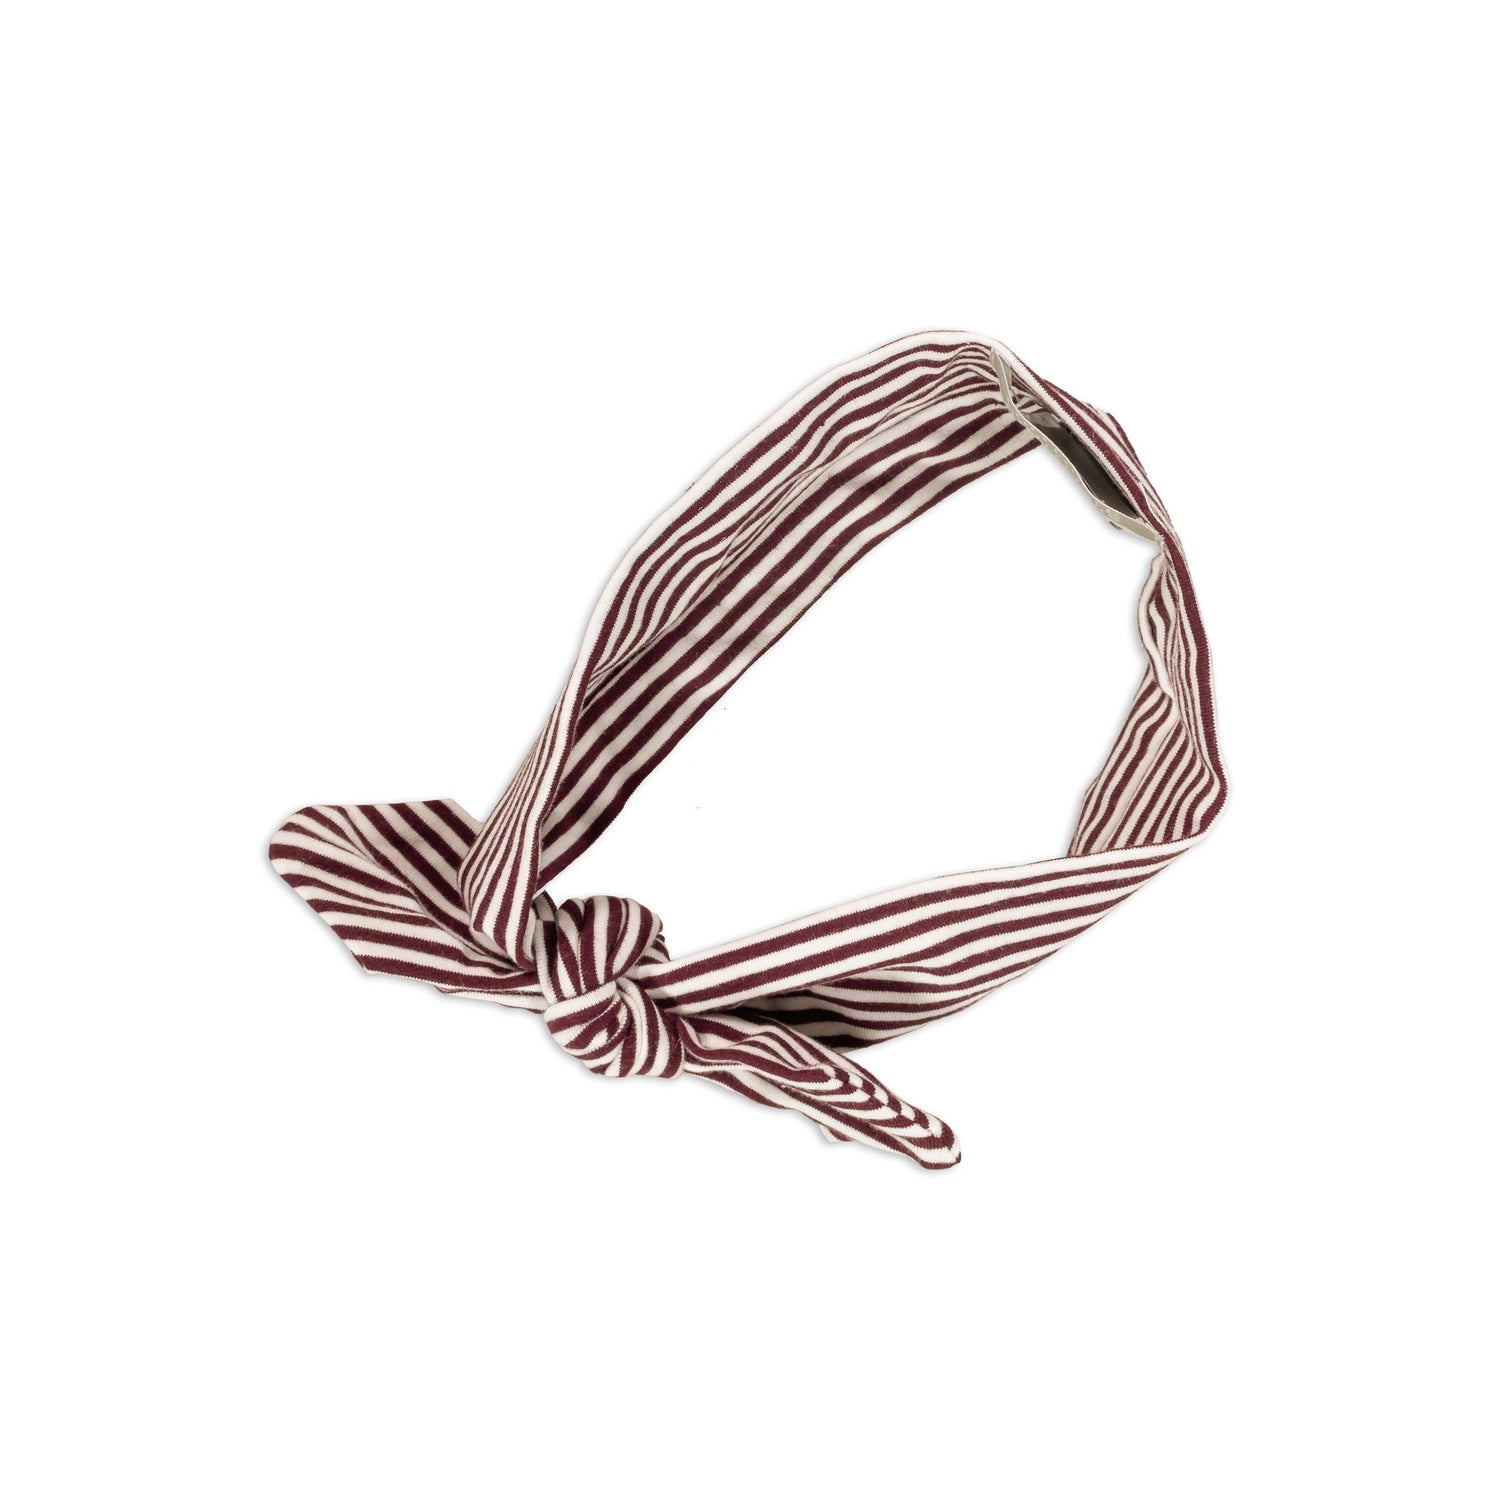 Maroon & White Striped Tied Bow Headband